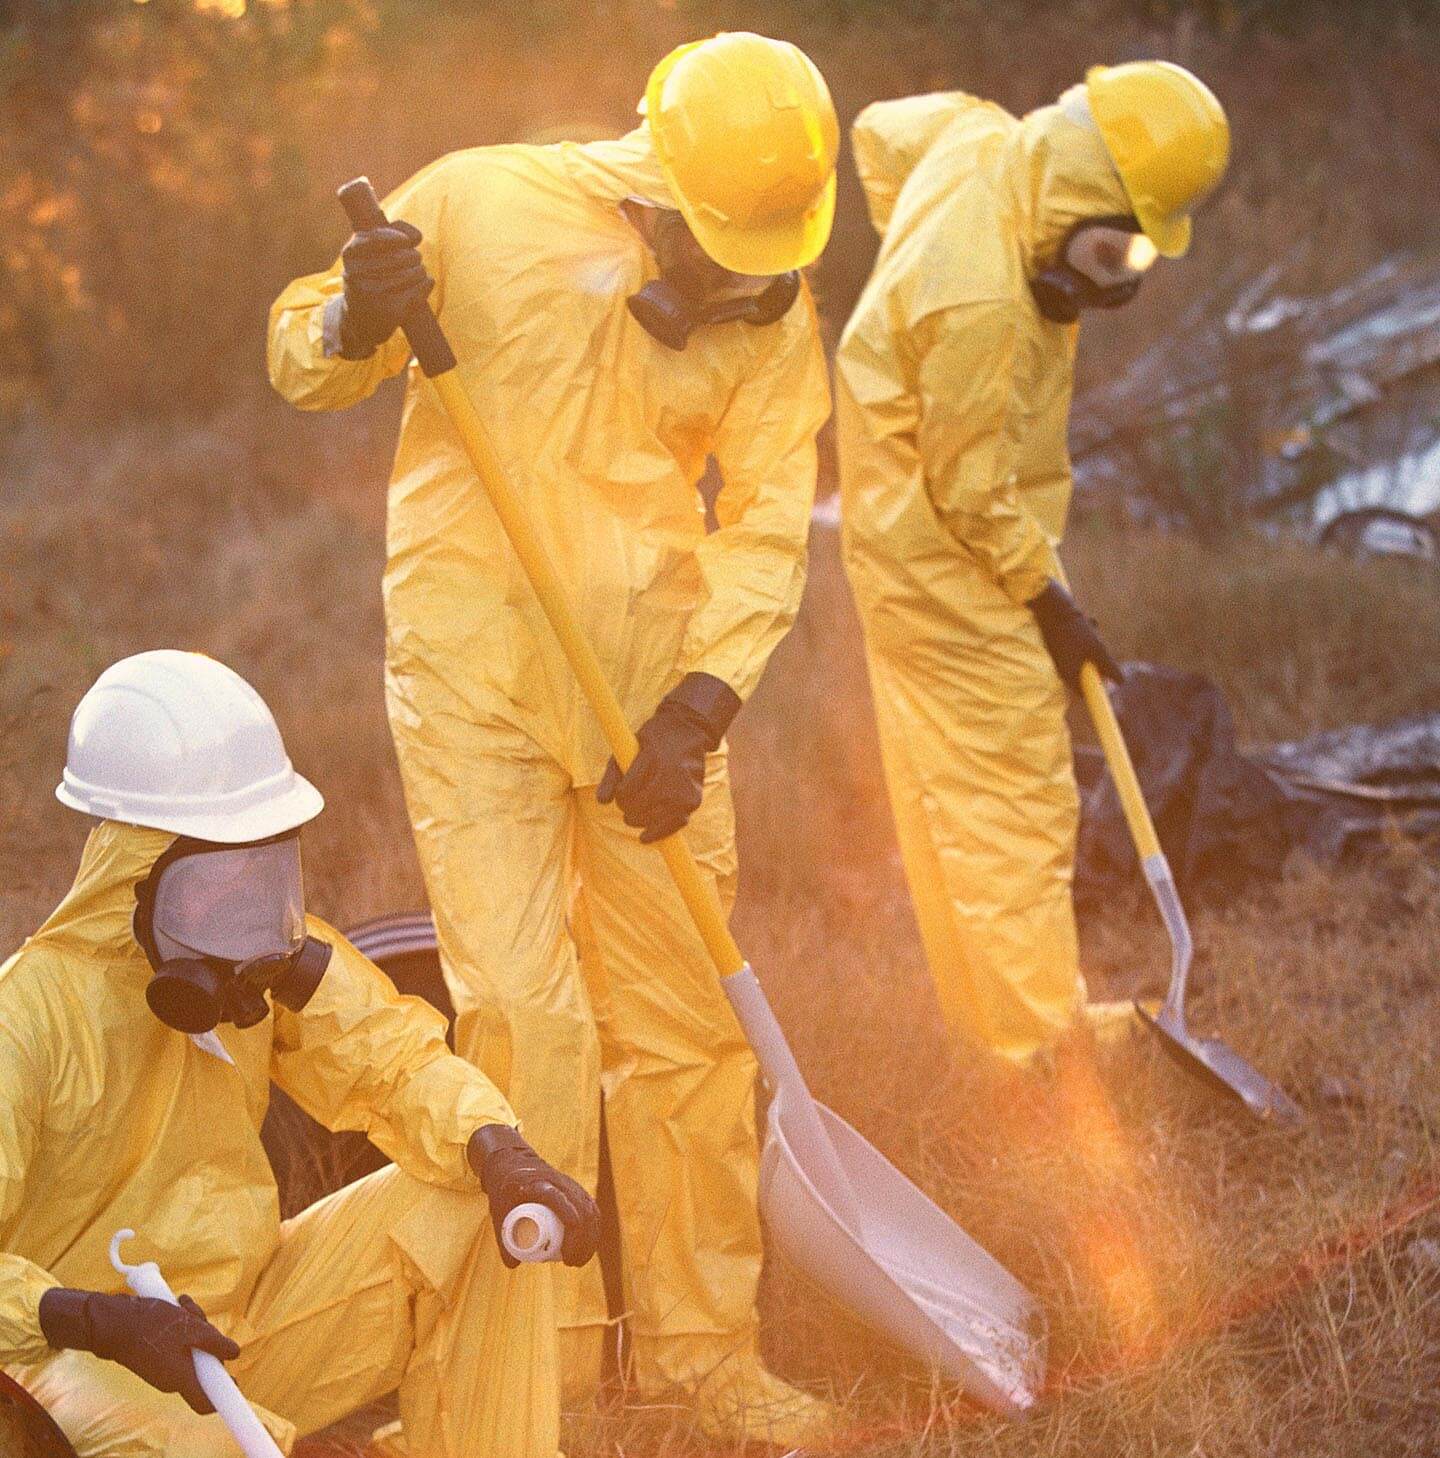 Workers in yellow hazmat suits working soil